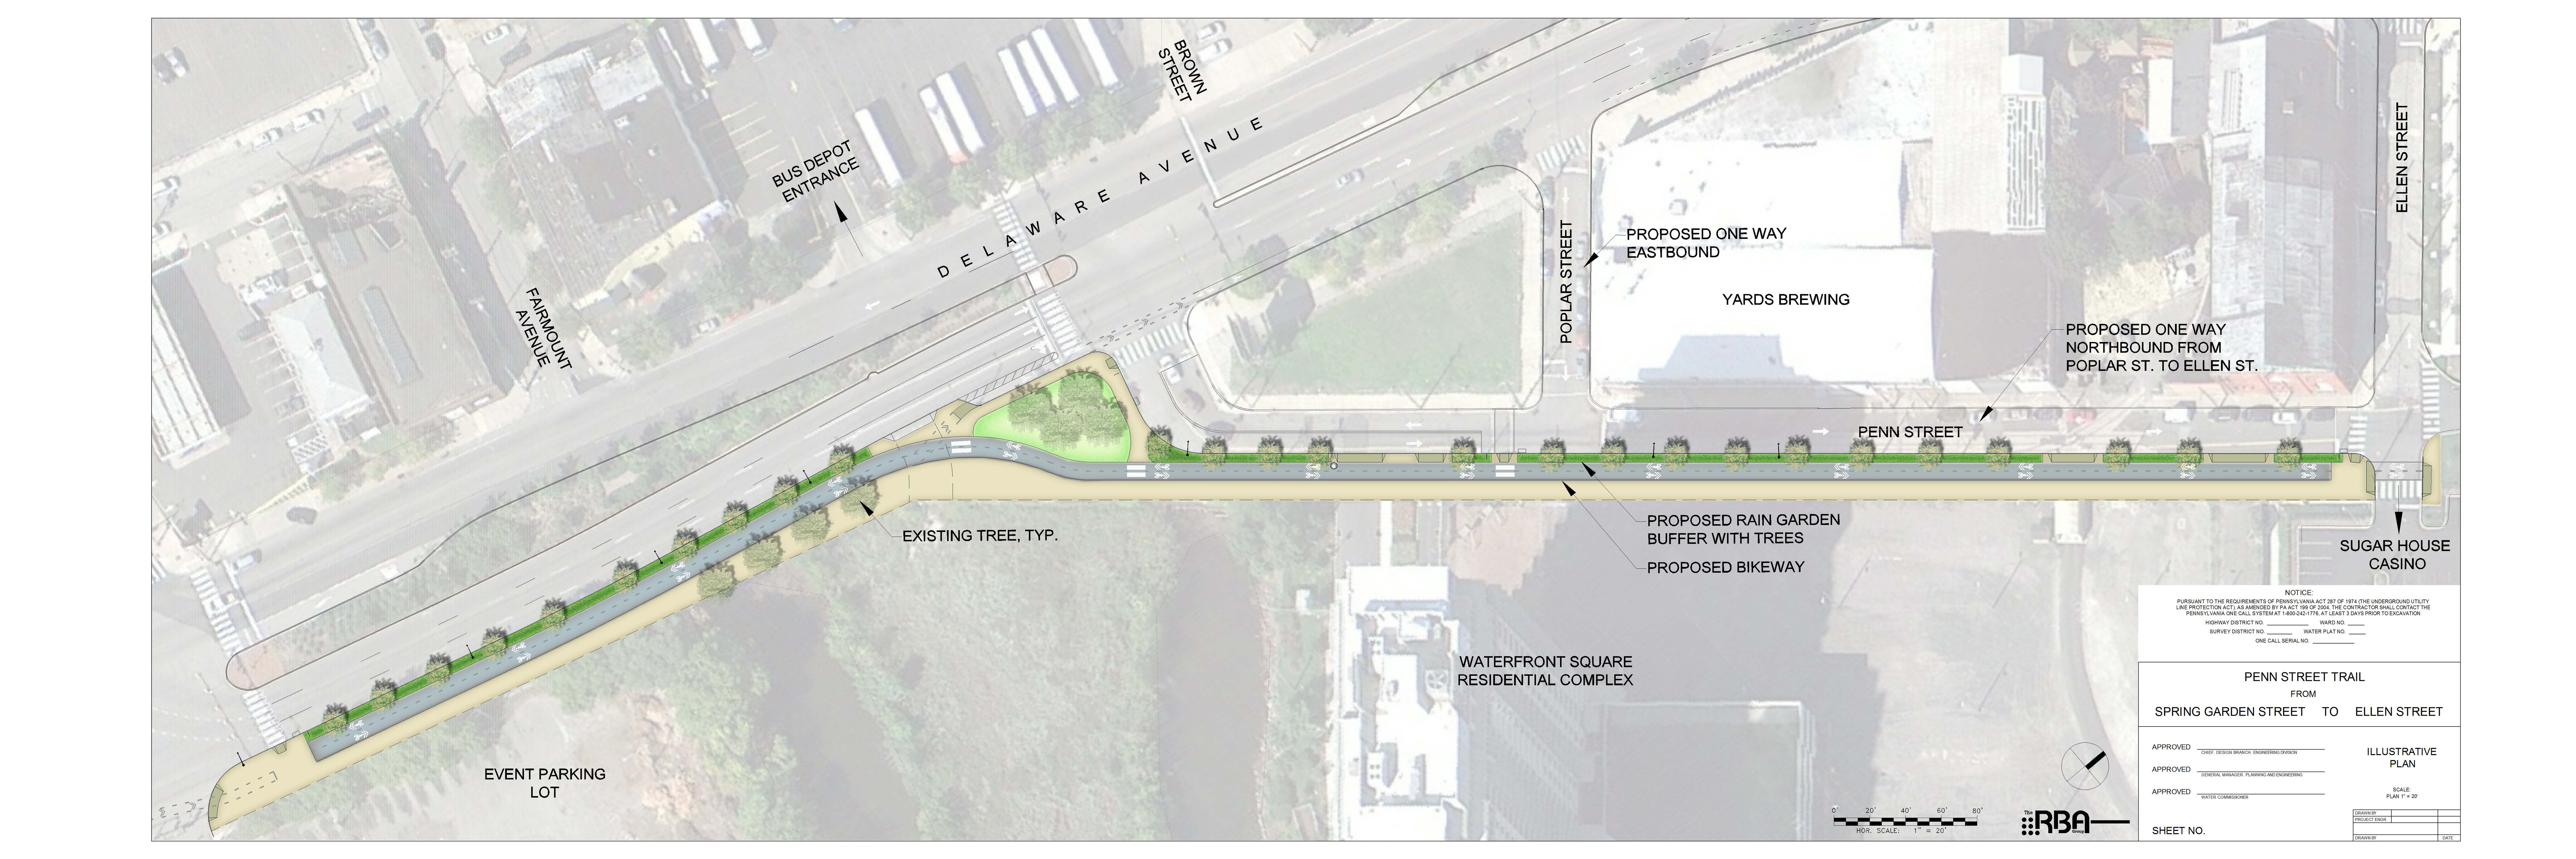 Preliminary Design for Penn Street Trail